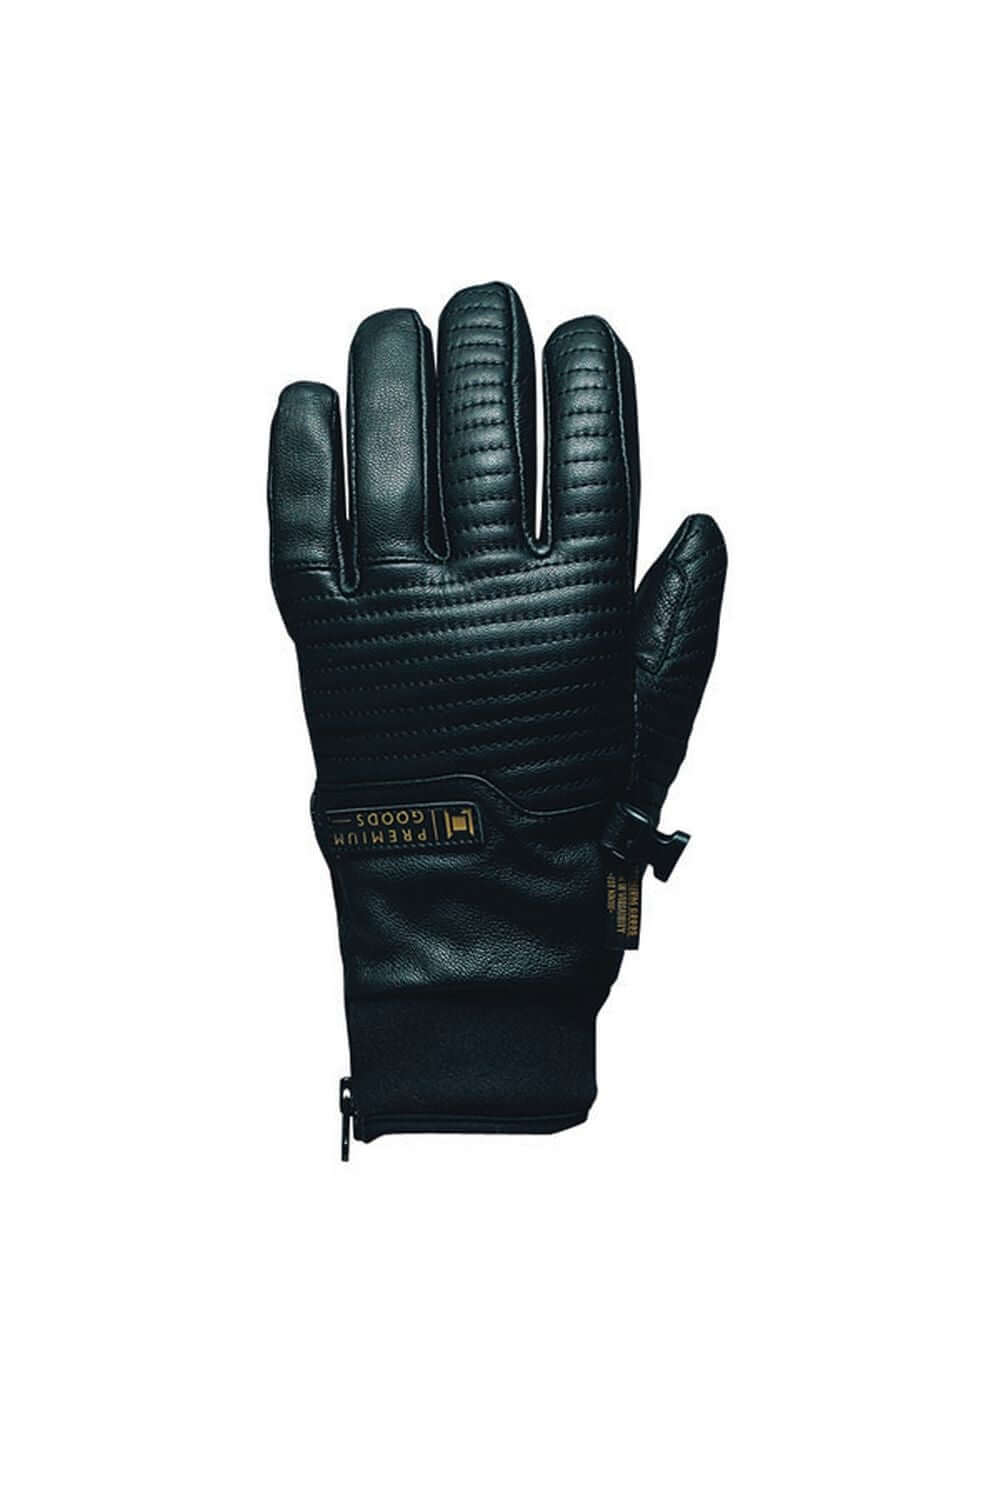 L1 Sabra Glove Black XL Snow Gloves